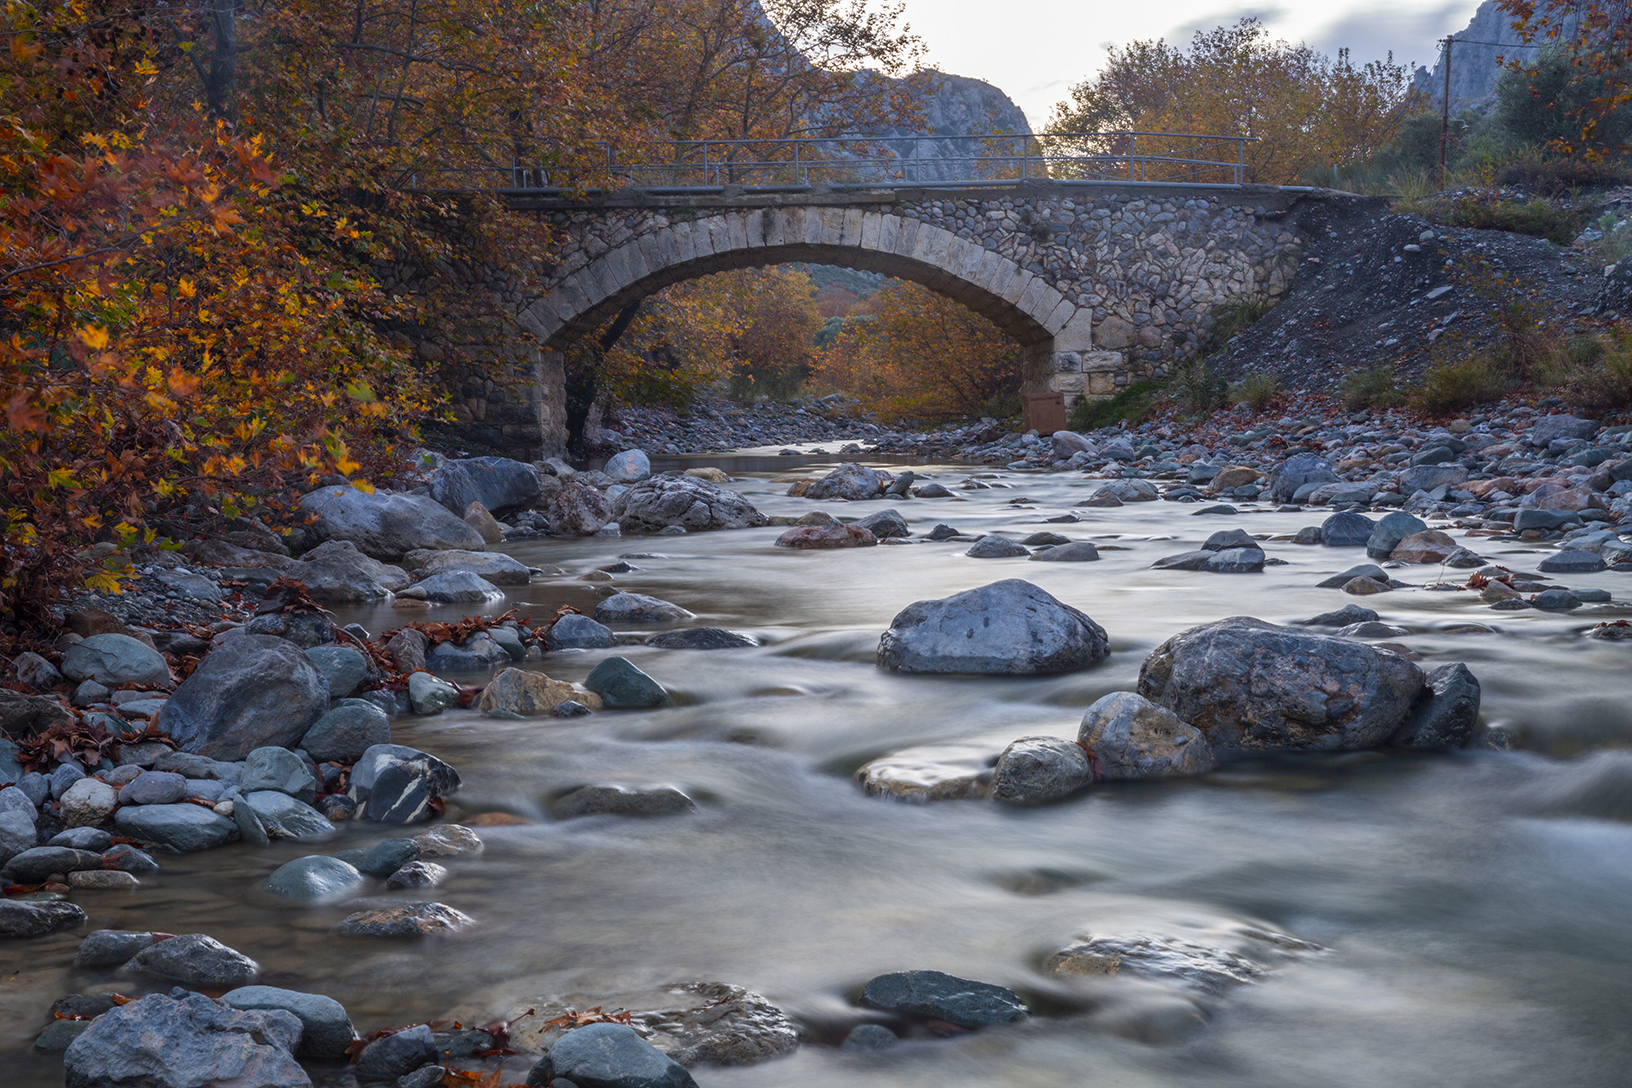 Πέτρινο γεφύρι στο ρέμα Μανικιάτης, χωριό Βρύση. Φωτογραφία: ©Βασίλης Συκάς, για τον Δήμο Κύμης-Αλιβερίου